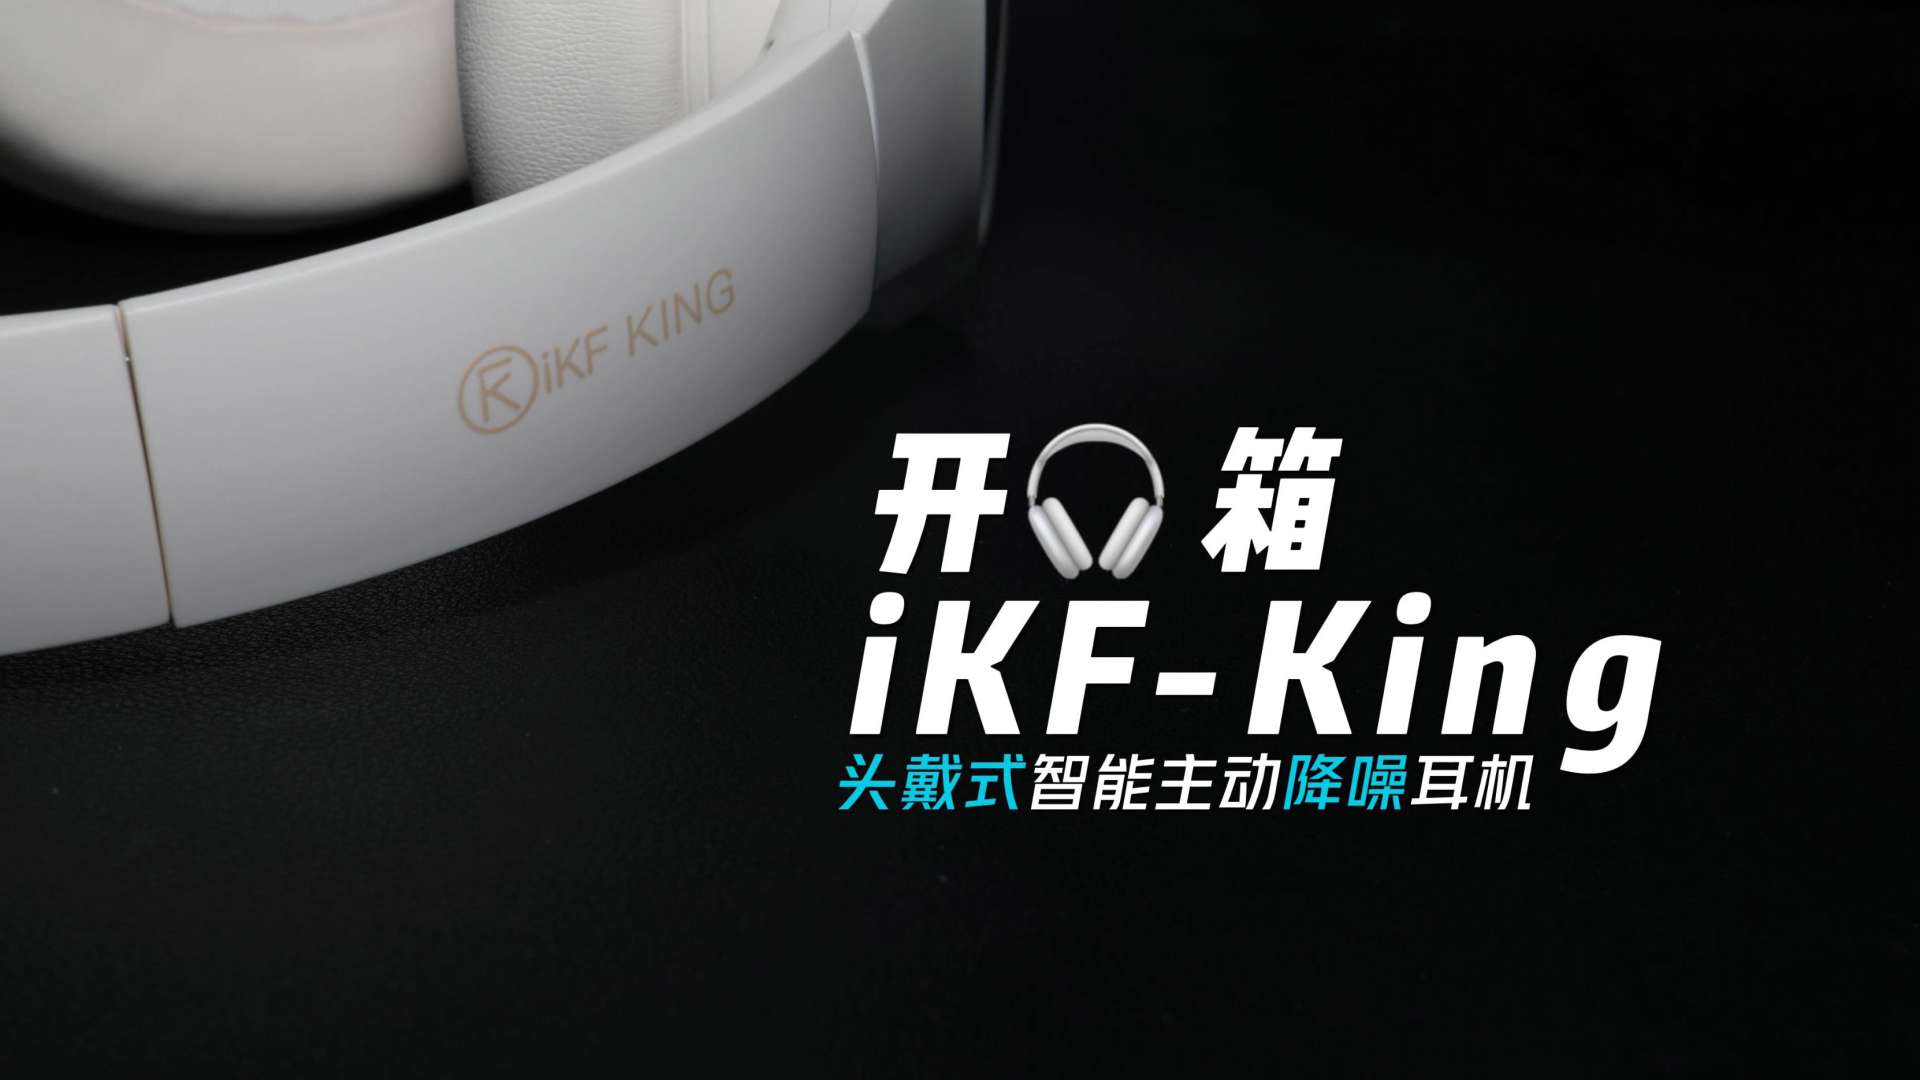 开箱：百元价位的性价比之王 iKF头戴式智能降噪蓝牙耳机 | iKF-King